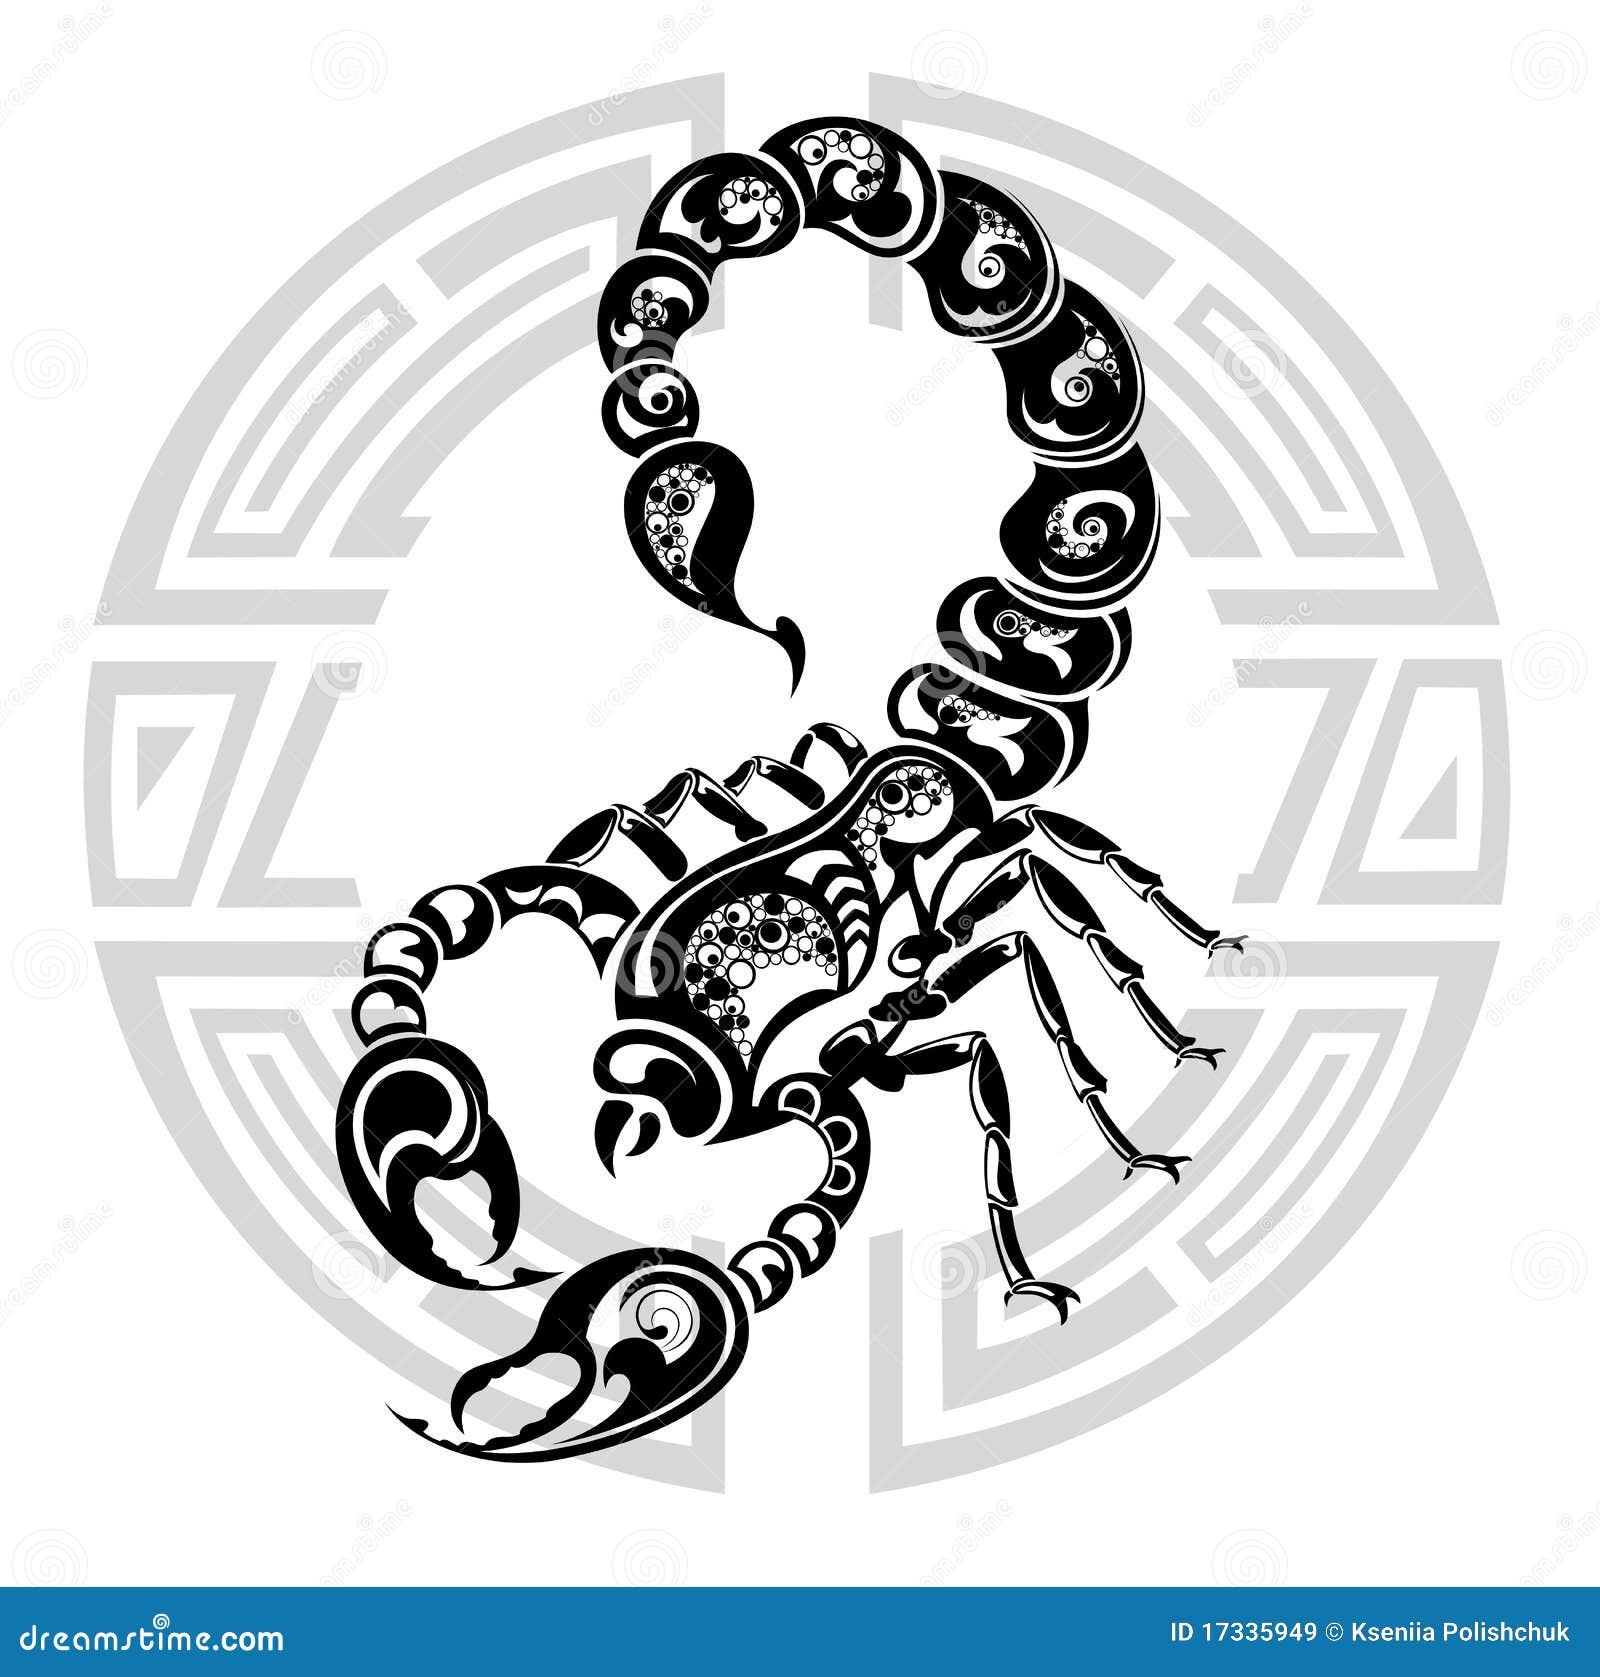 Scorpio Zodiac Sign Stock Vector. Illustration Of Ornament - 17335949